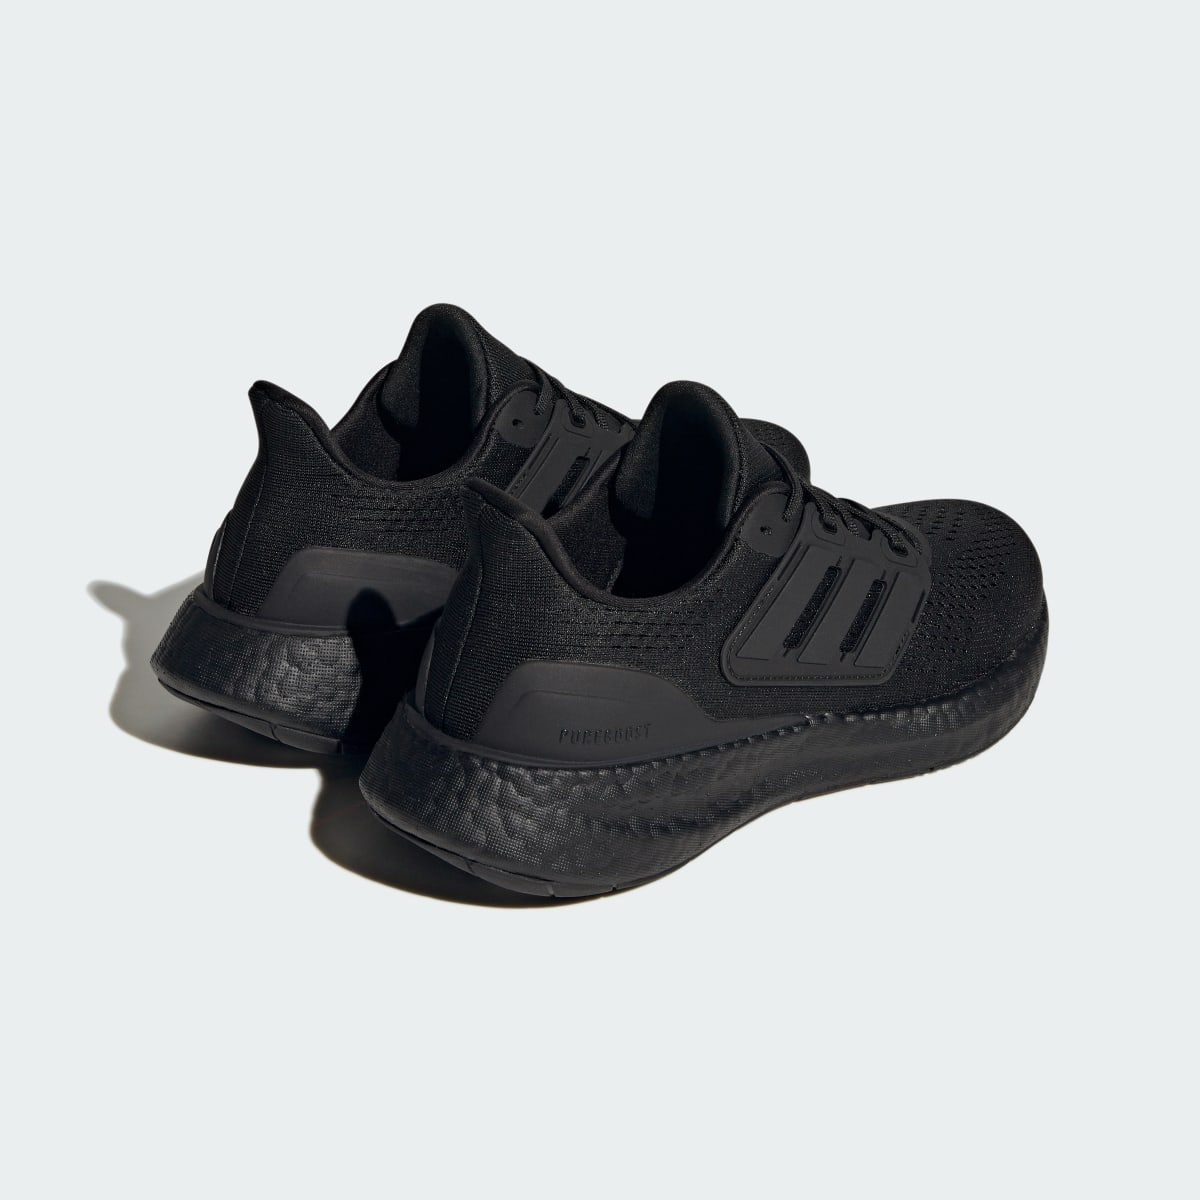 Adidas Chaussure Pureboost 23. 6